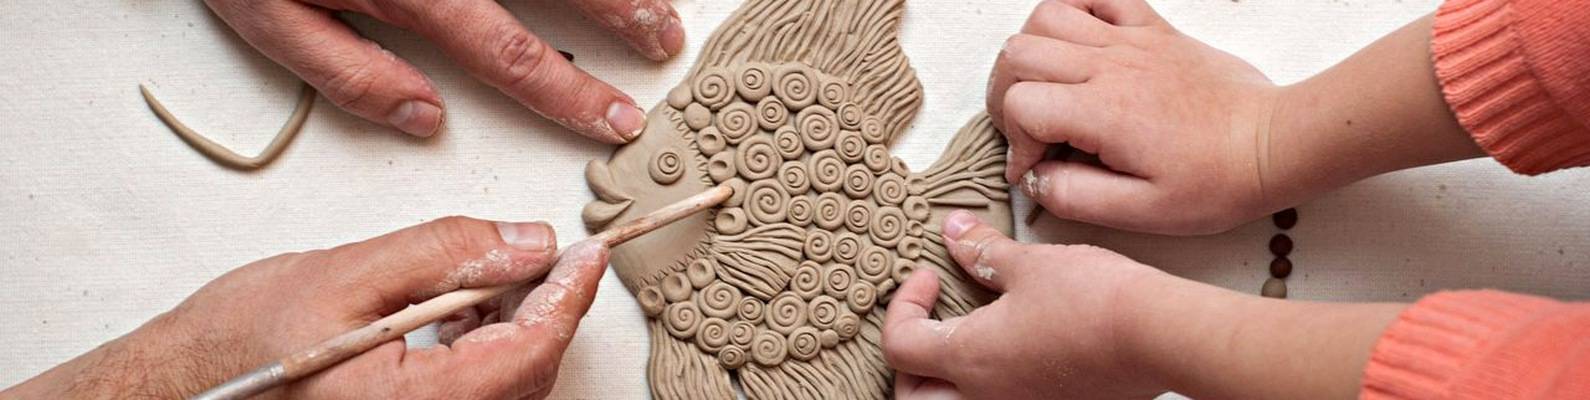 Керамика своими руками в домашних условиях, приемы и способы изготовления